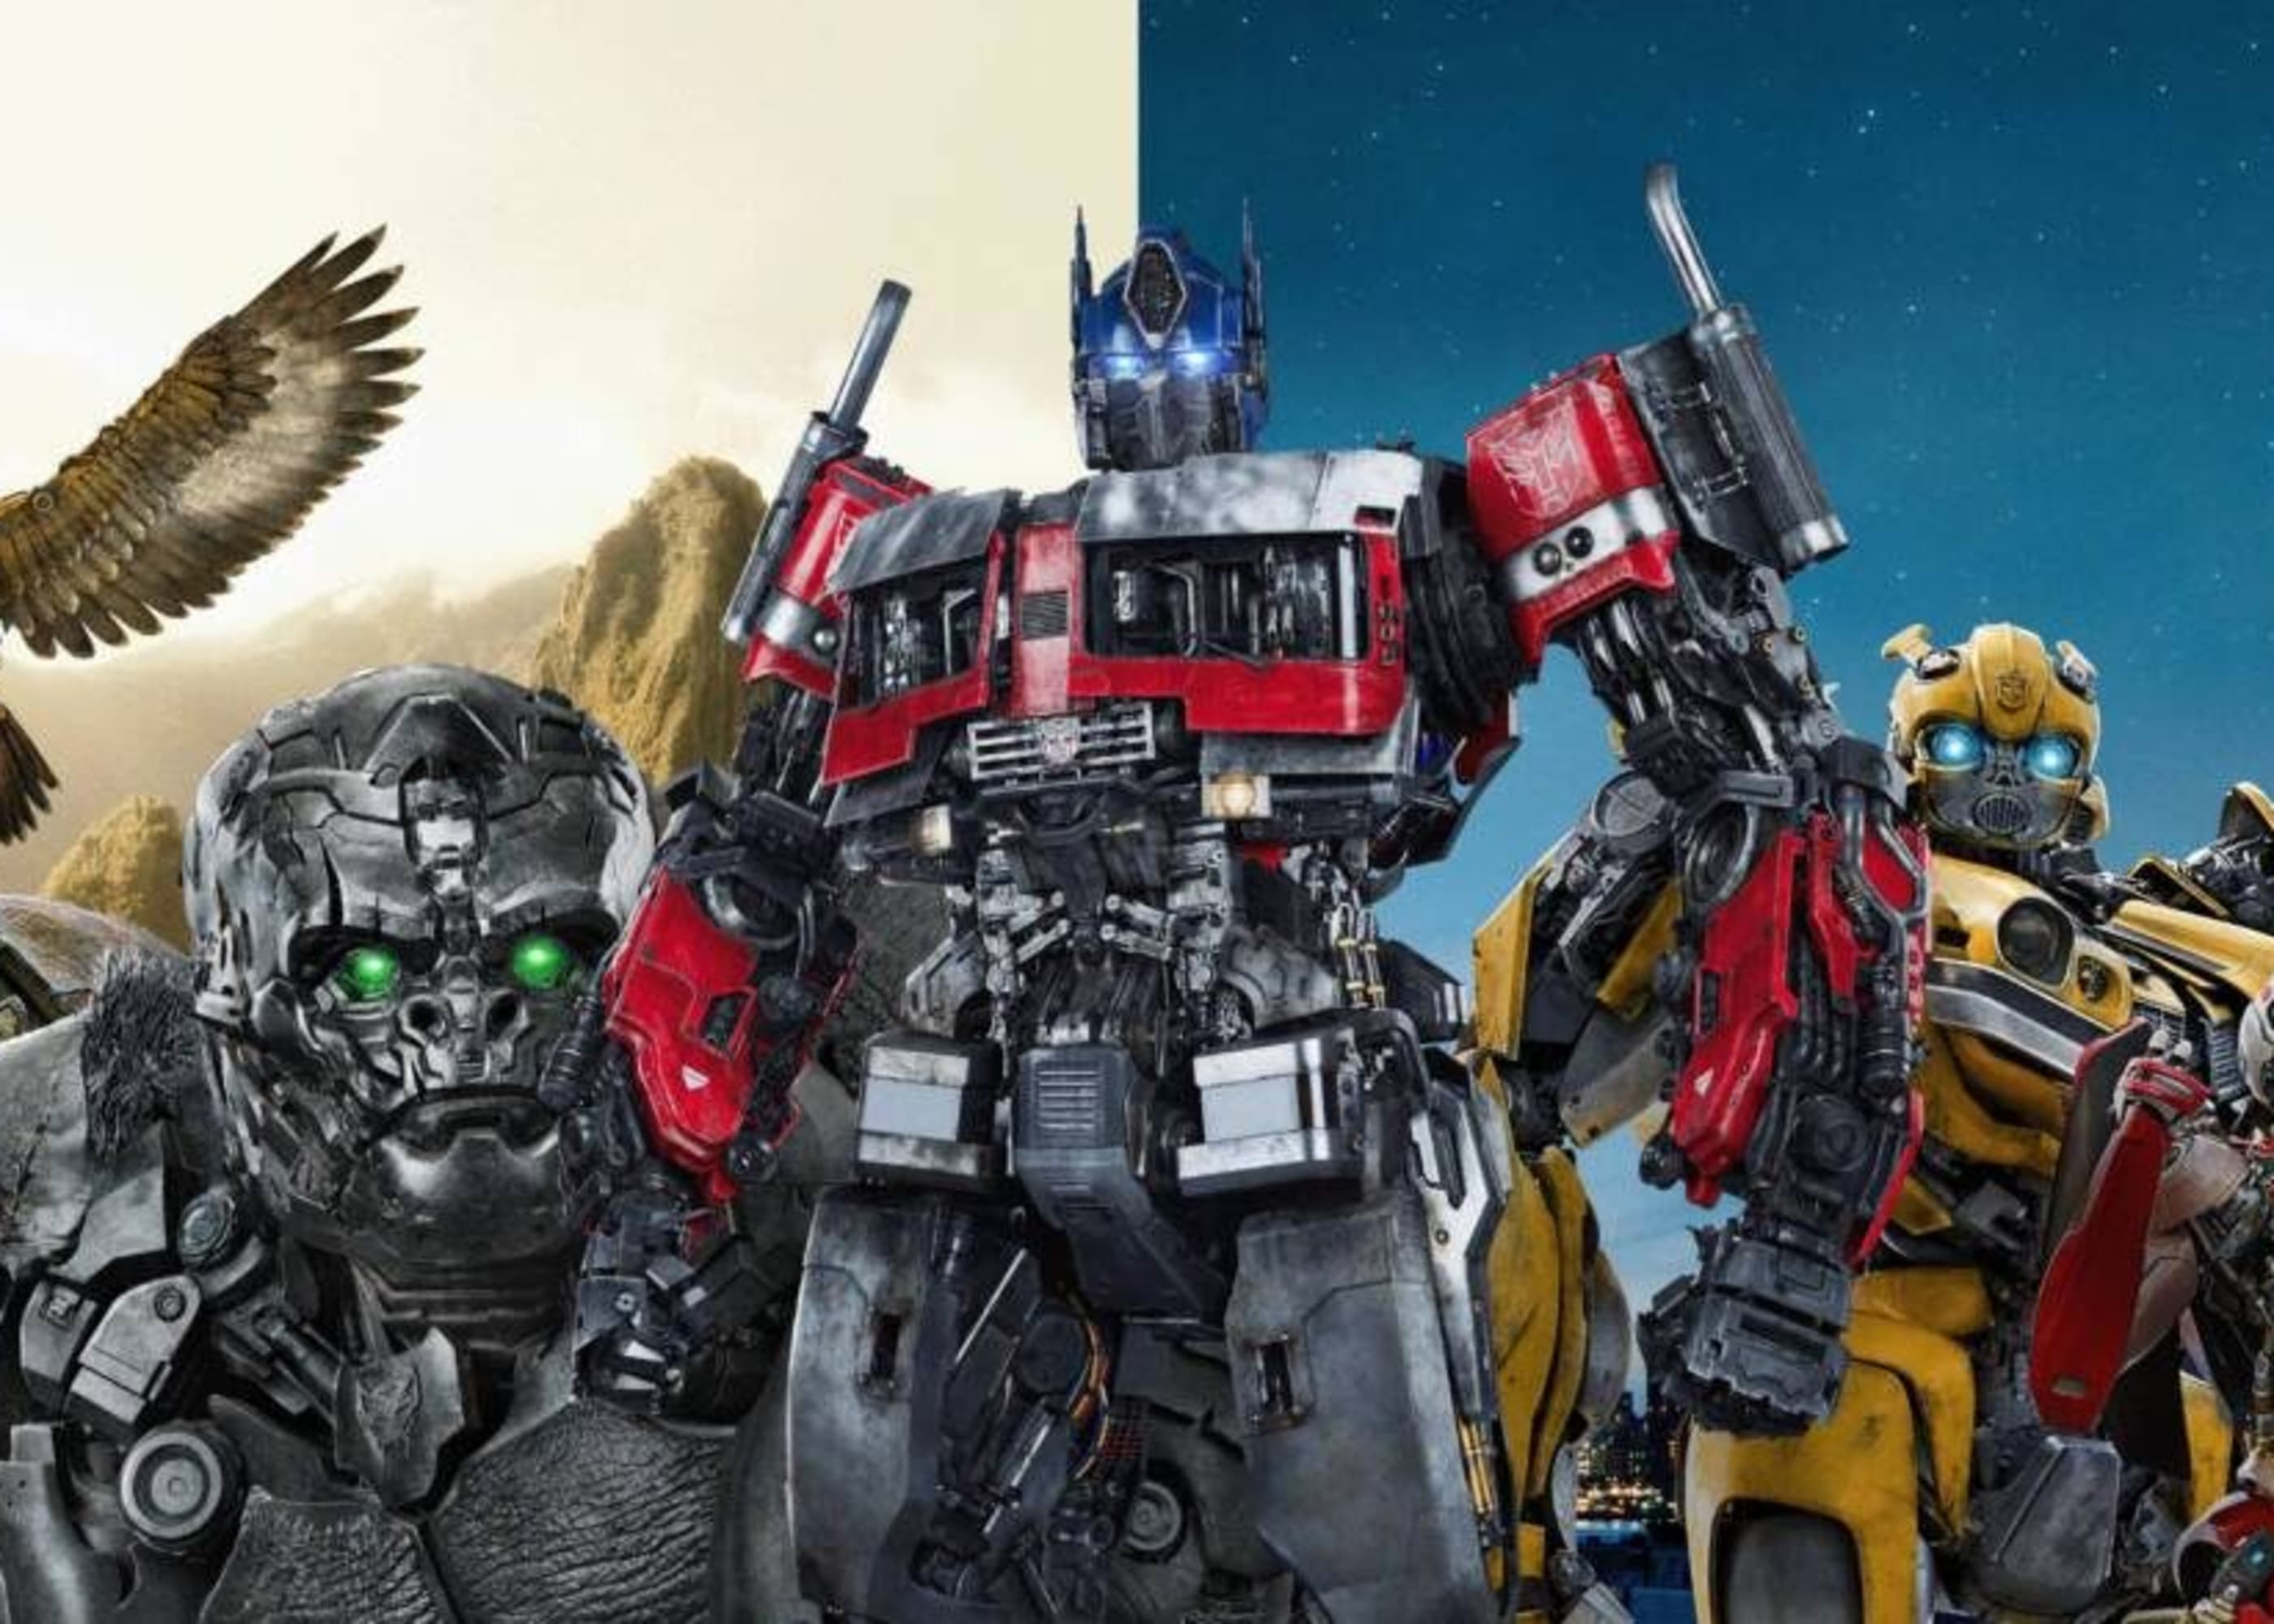 Assista aos filmes de Transformers em ordemcronológica